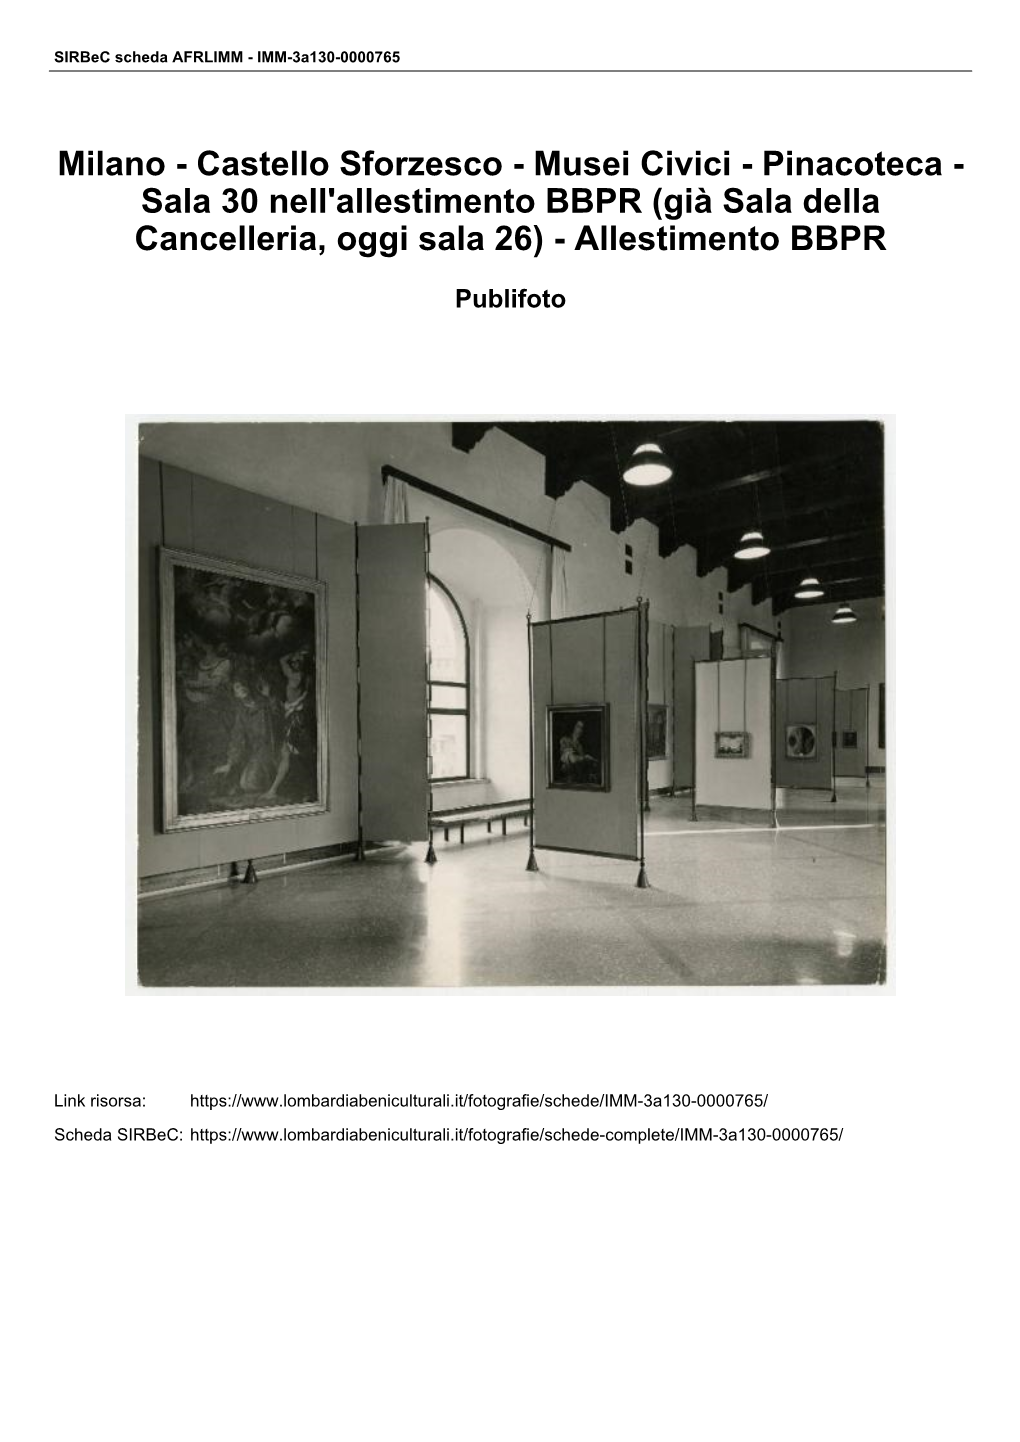 Castello Sforzesco - Musei Civici - Pinacoteca - Sala 30 Nell'allestimento BBPR (Già Sala Della Cancelleria, Oggi Sala 26) - Allestimento BBPR